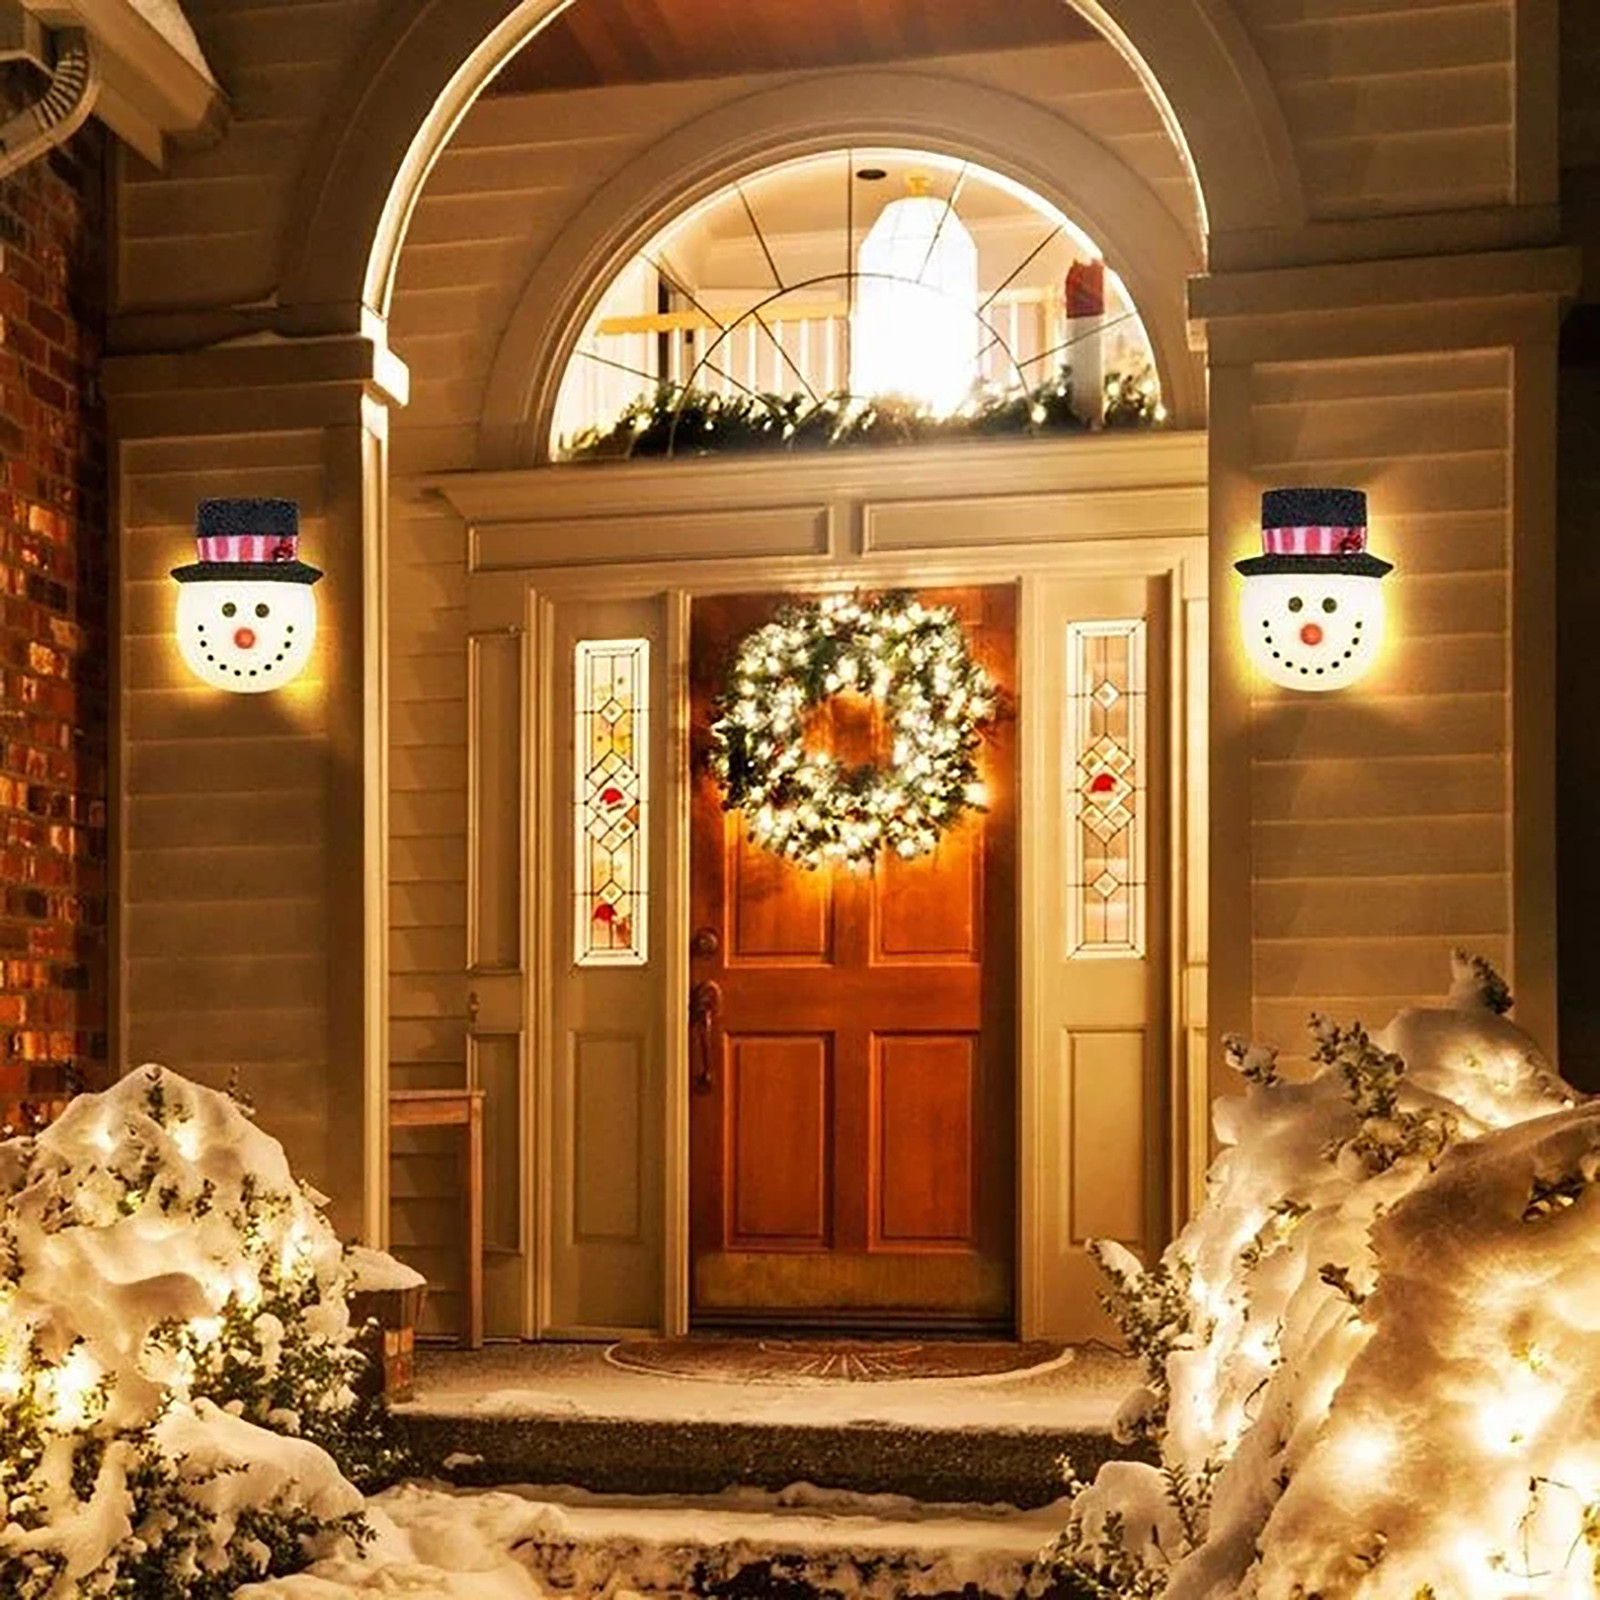 Christmas-Snowman-Lampshade-Corridor-Wall-Lamp-Decoration-Outside-Xmas-Lamp-Shade-Holiday-Christmas--1918460-9